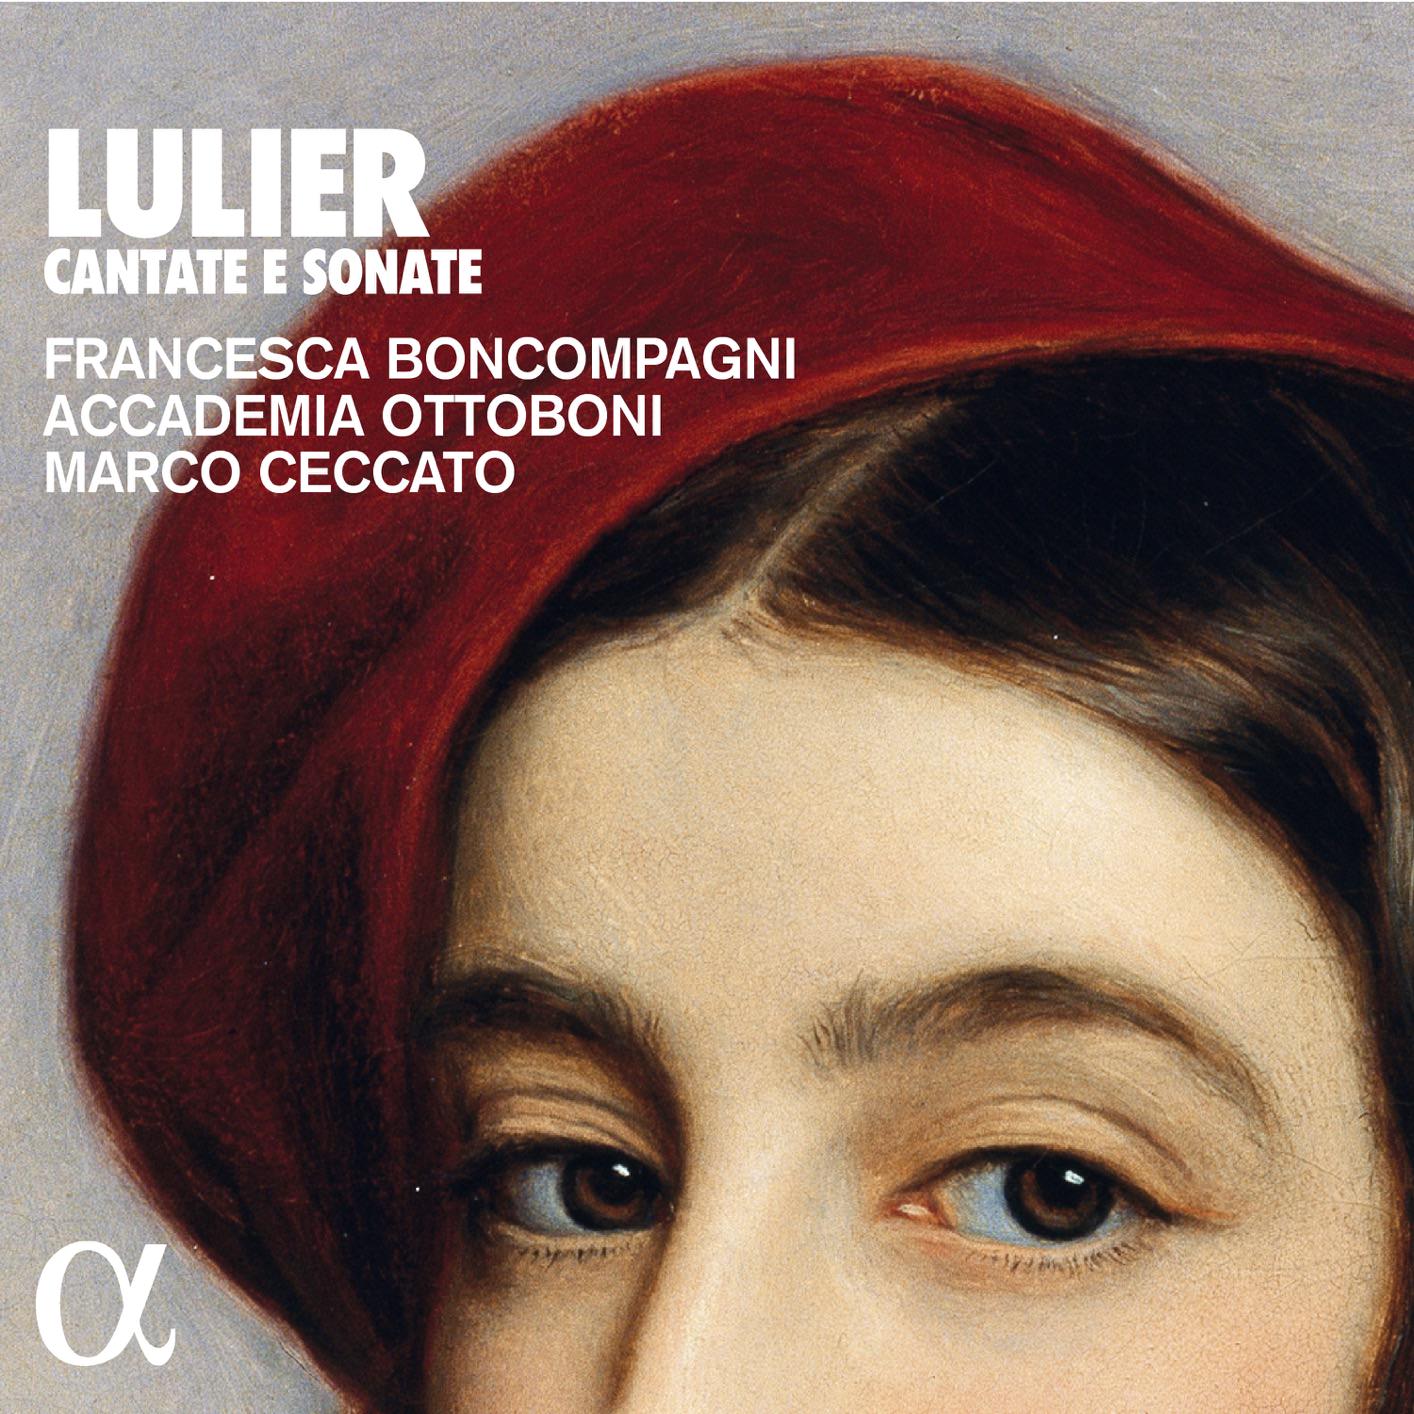 Francesca Boncompagni, Accademia Ottoboni, Marco Ceccato - Lulier: Cantate e sonate (2018) [FLAC 24bit/96kHz]